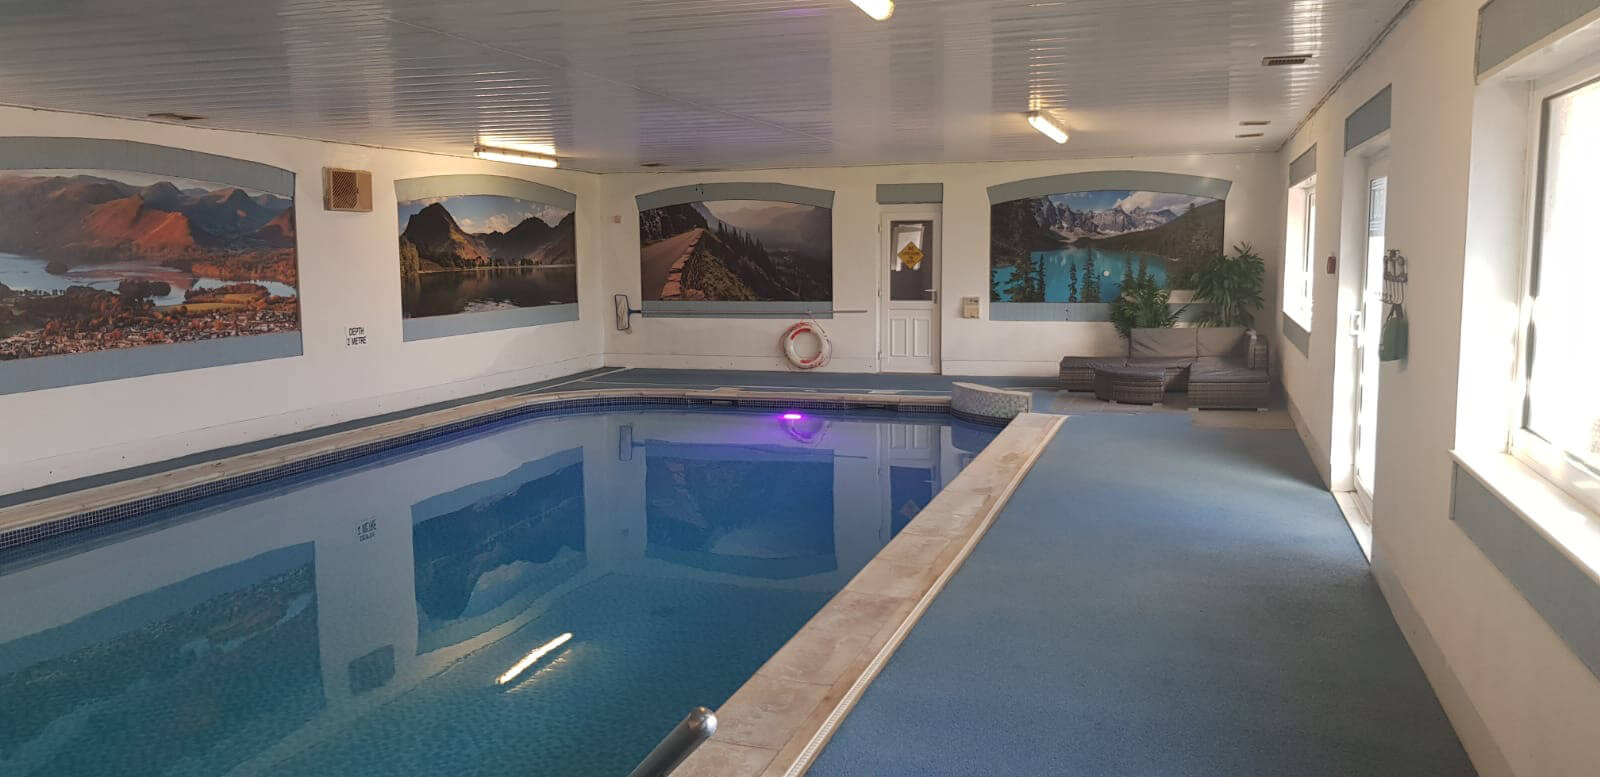 Dalston Leisure Pool - Swimming pool in Carlisle